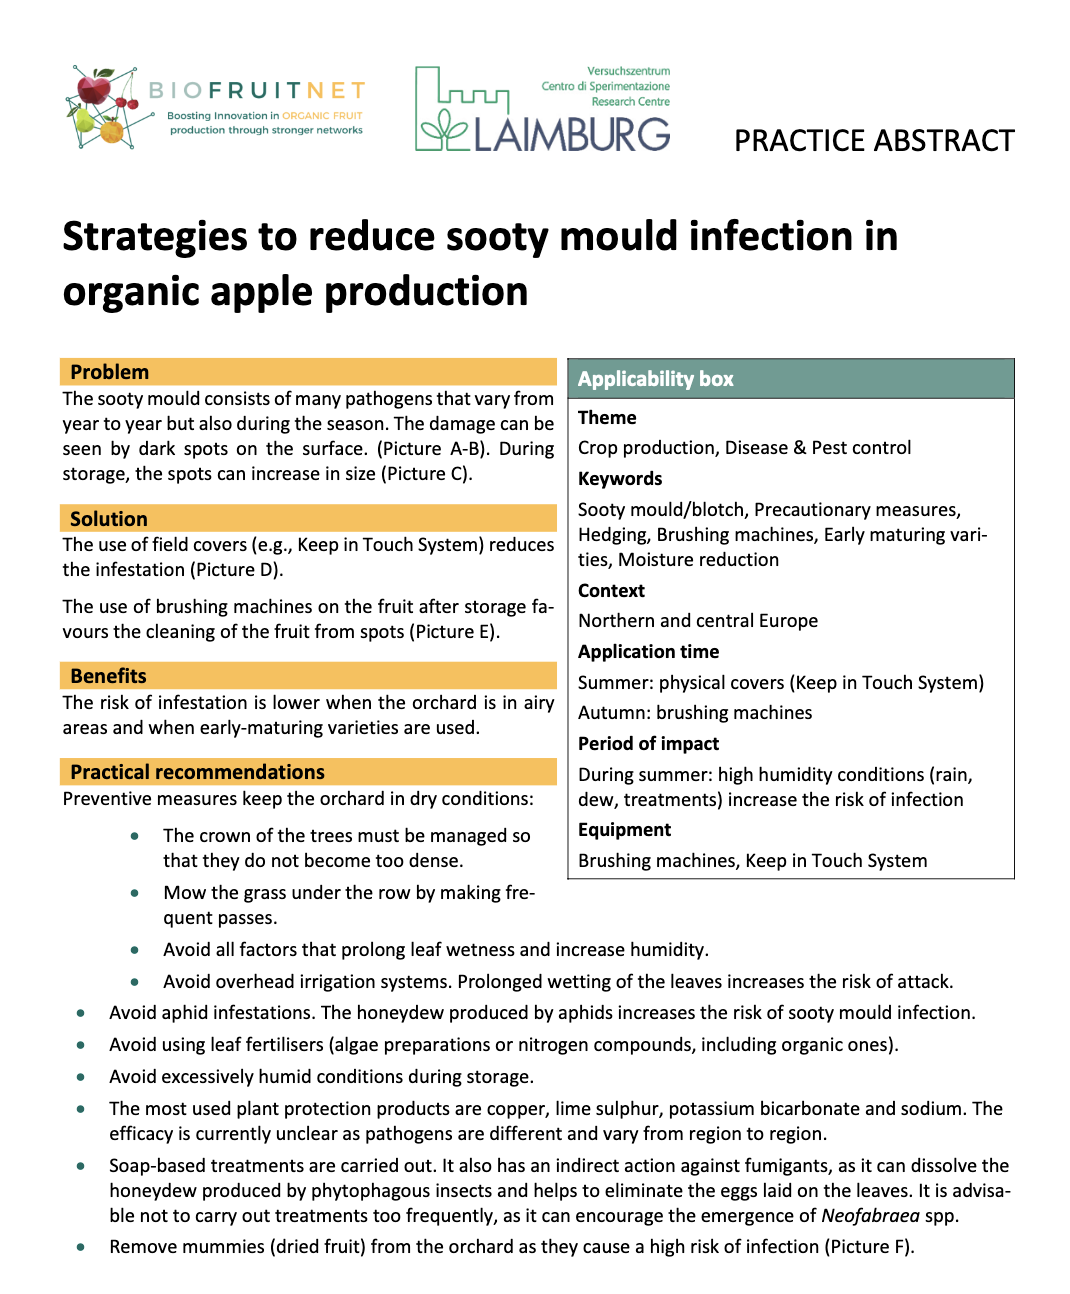 Στρατηγικές για τη μείωση της μόλυνσης από μούχλα αιθάλης στη βιολογική παραγωγή μήλων (BIOFRUITNET Practice Abstract)